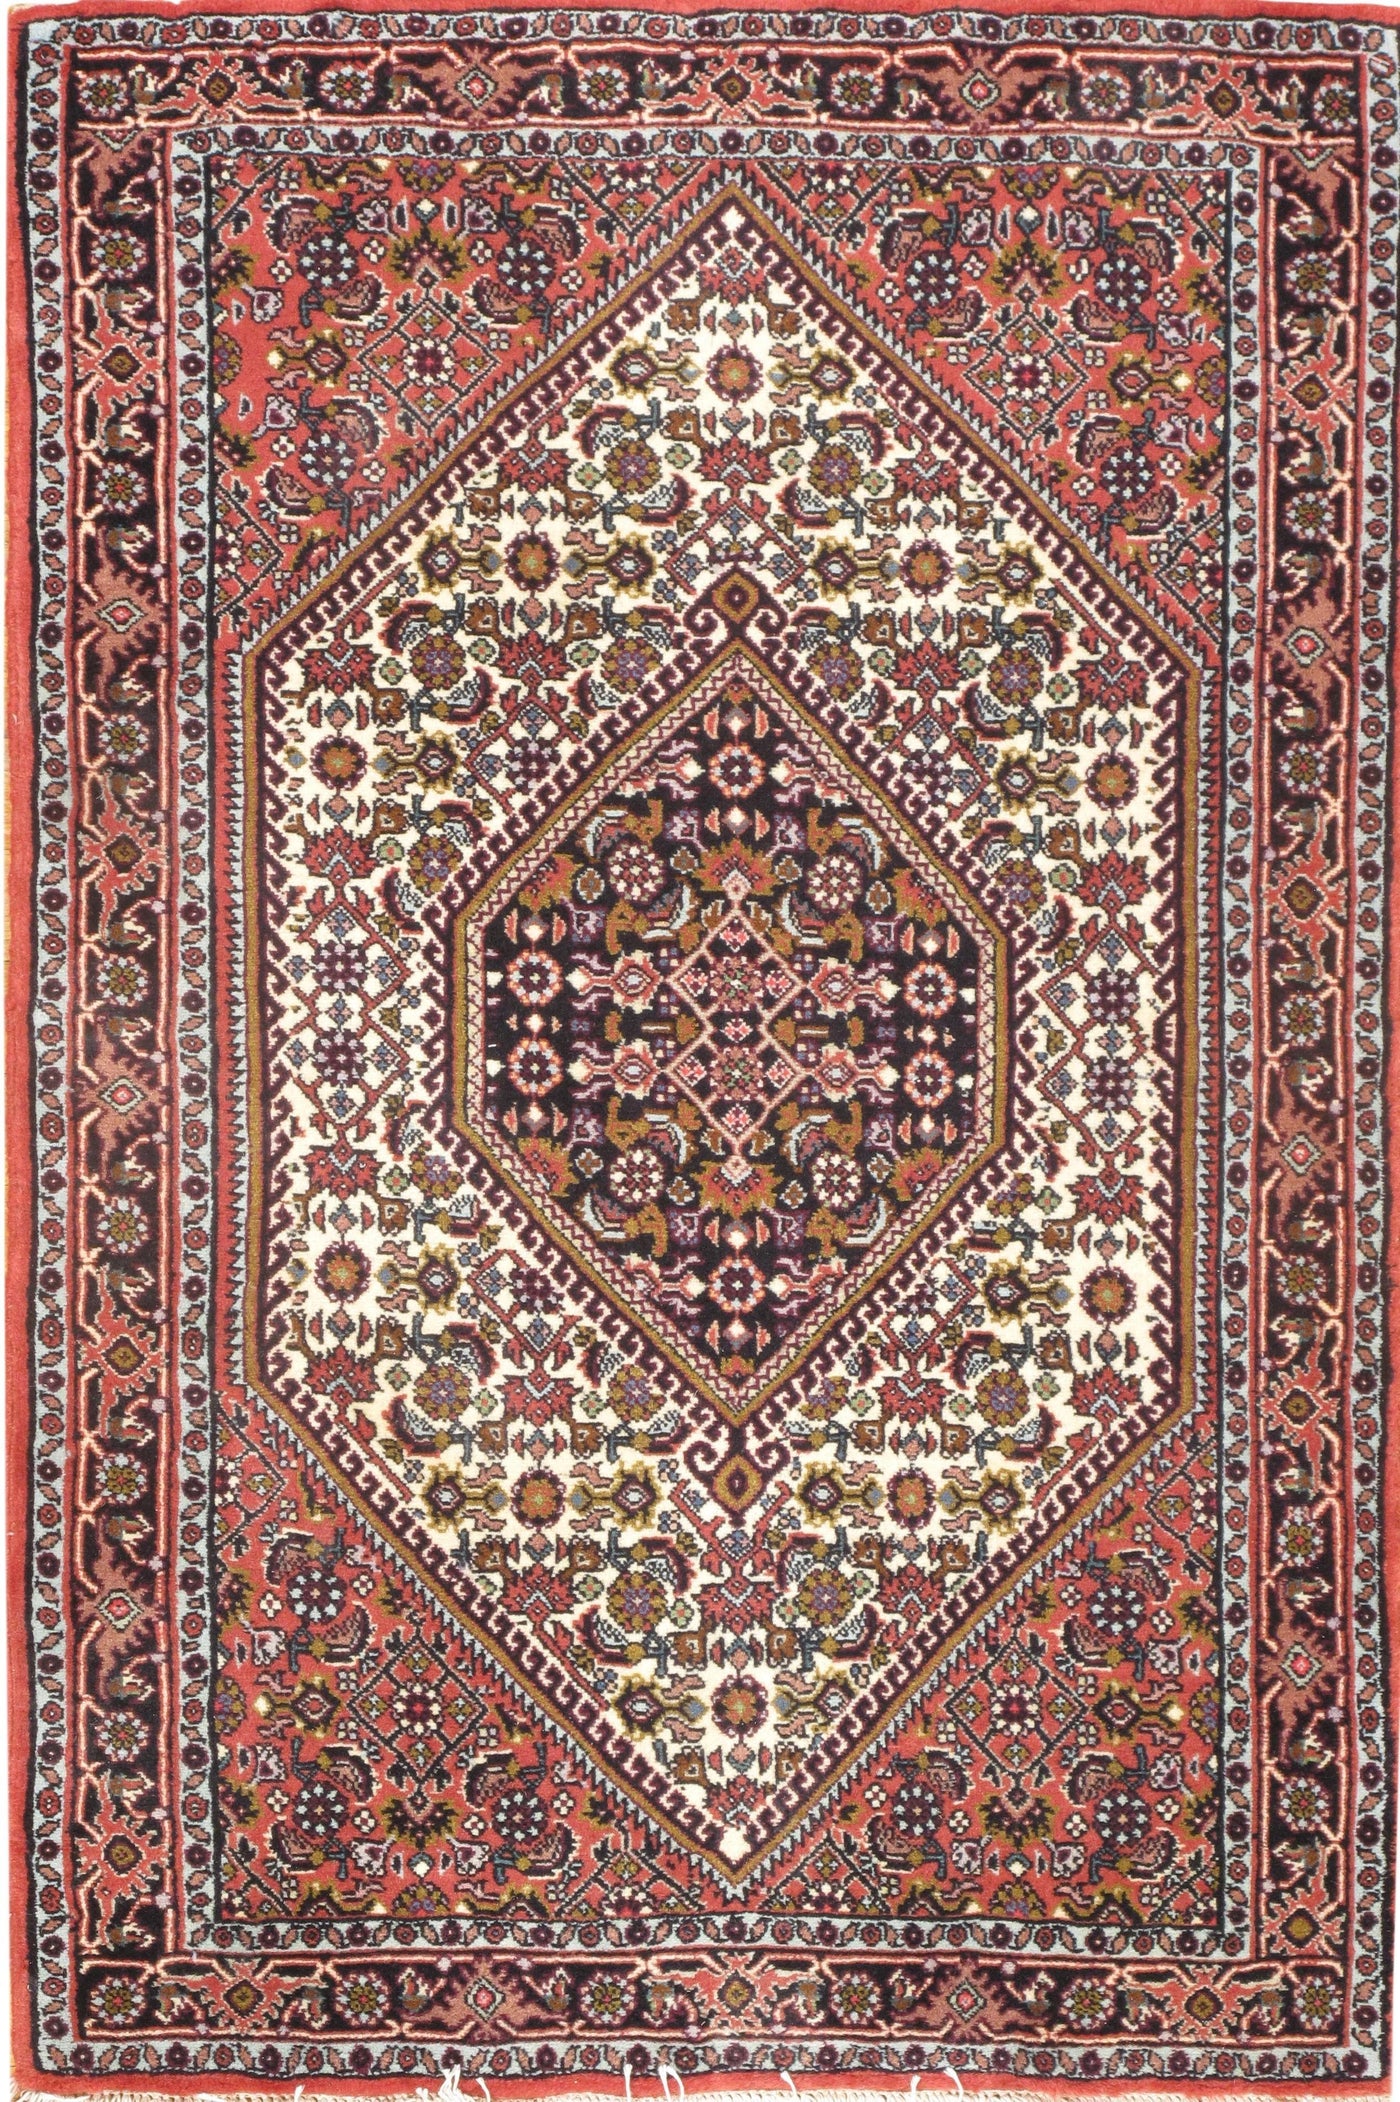 Persian Bidjar Hand-Knotted Rug - 2'4" x 3'7